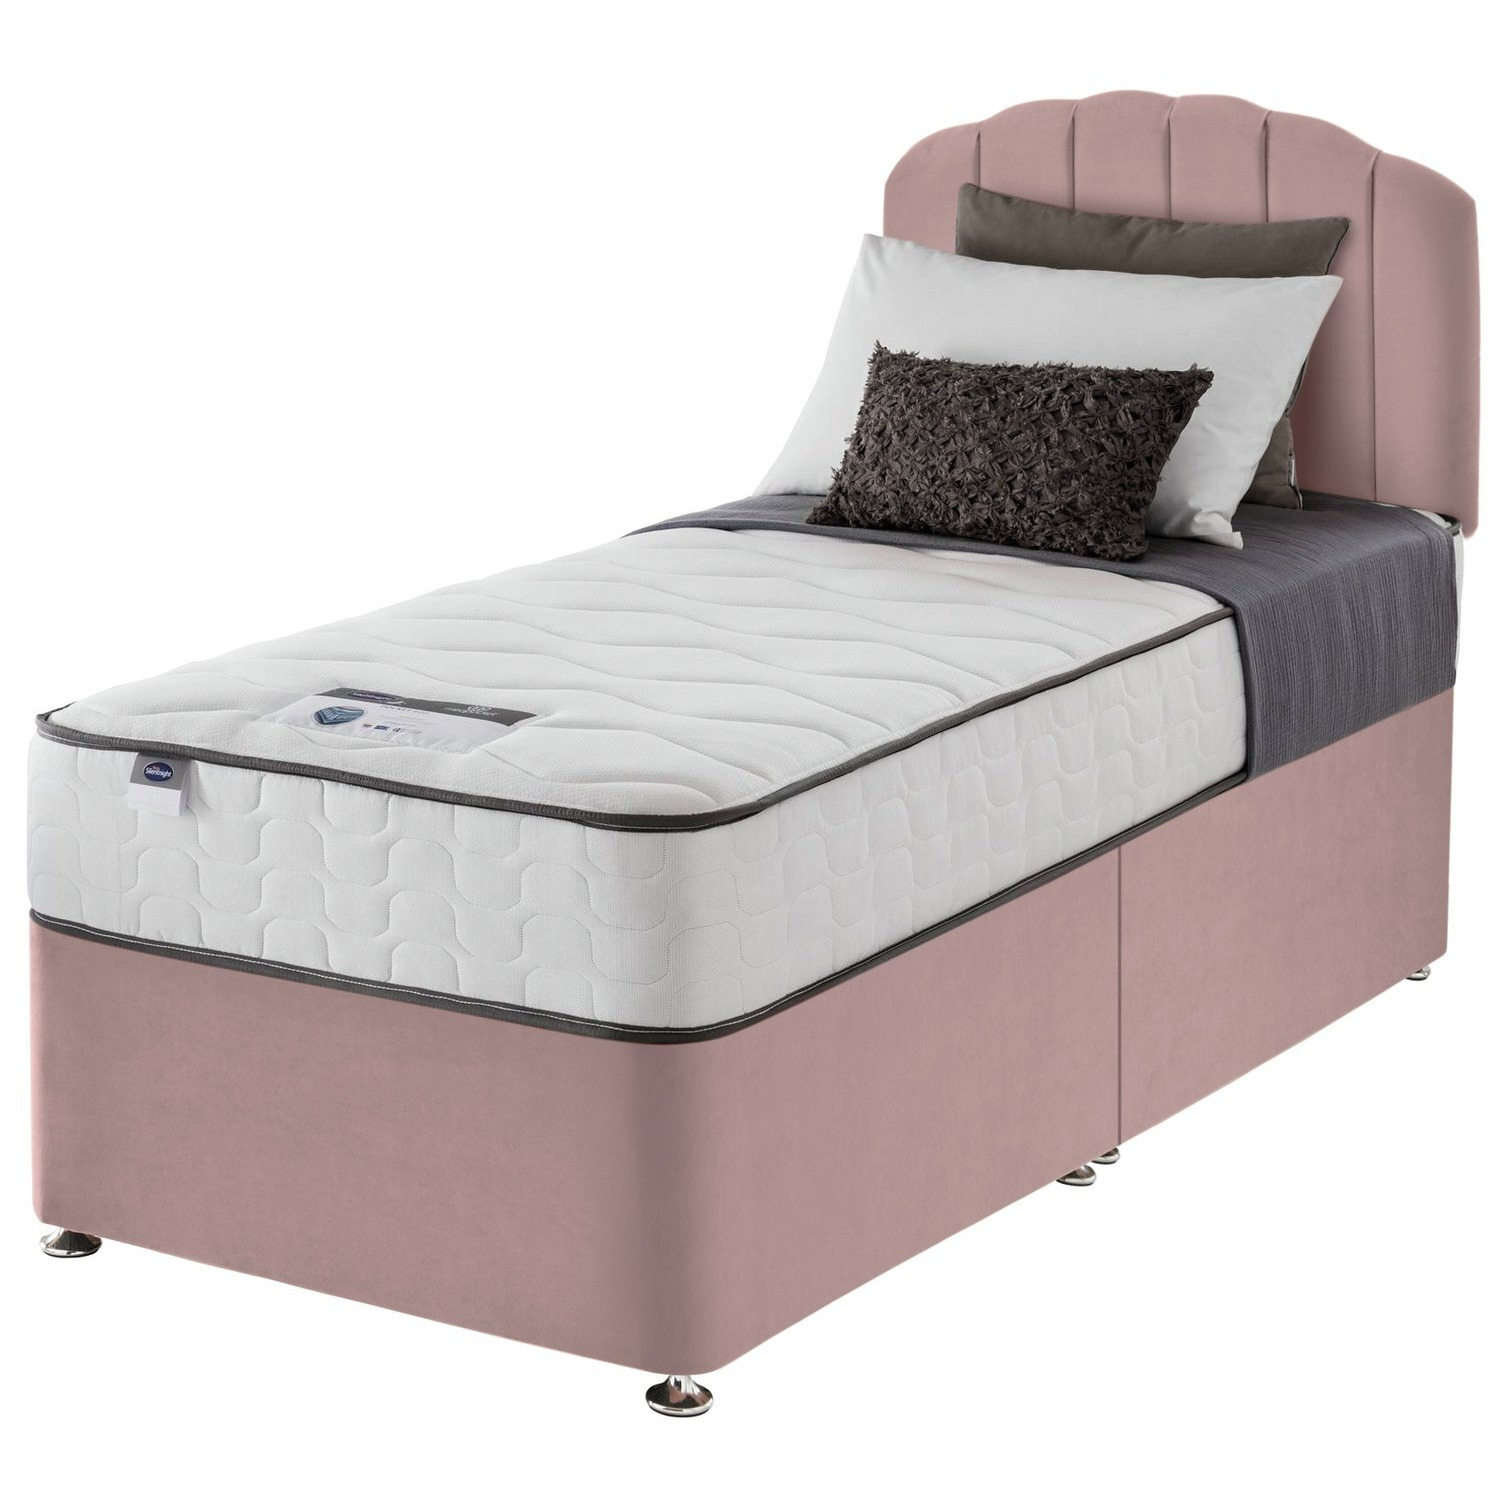 Silentnight Middleton Single Comfort Divan Bed - Pink - image 1